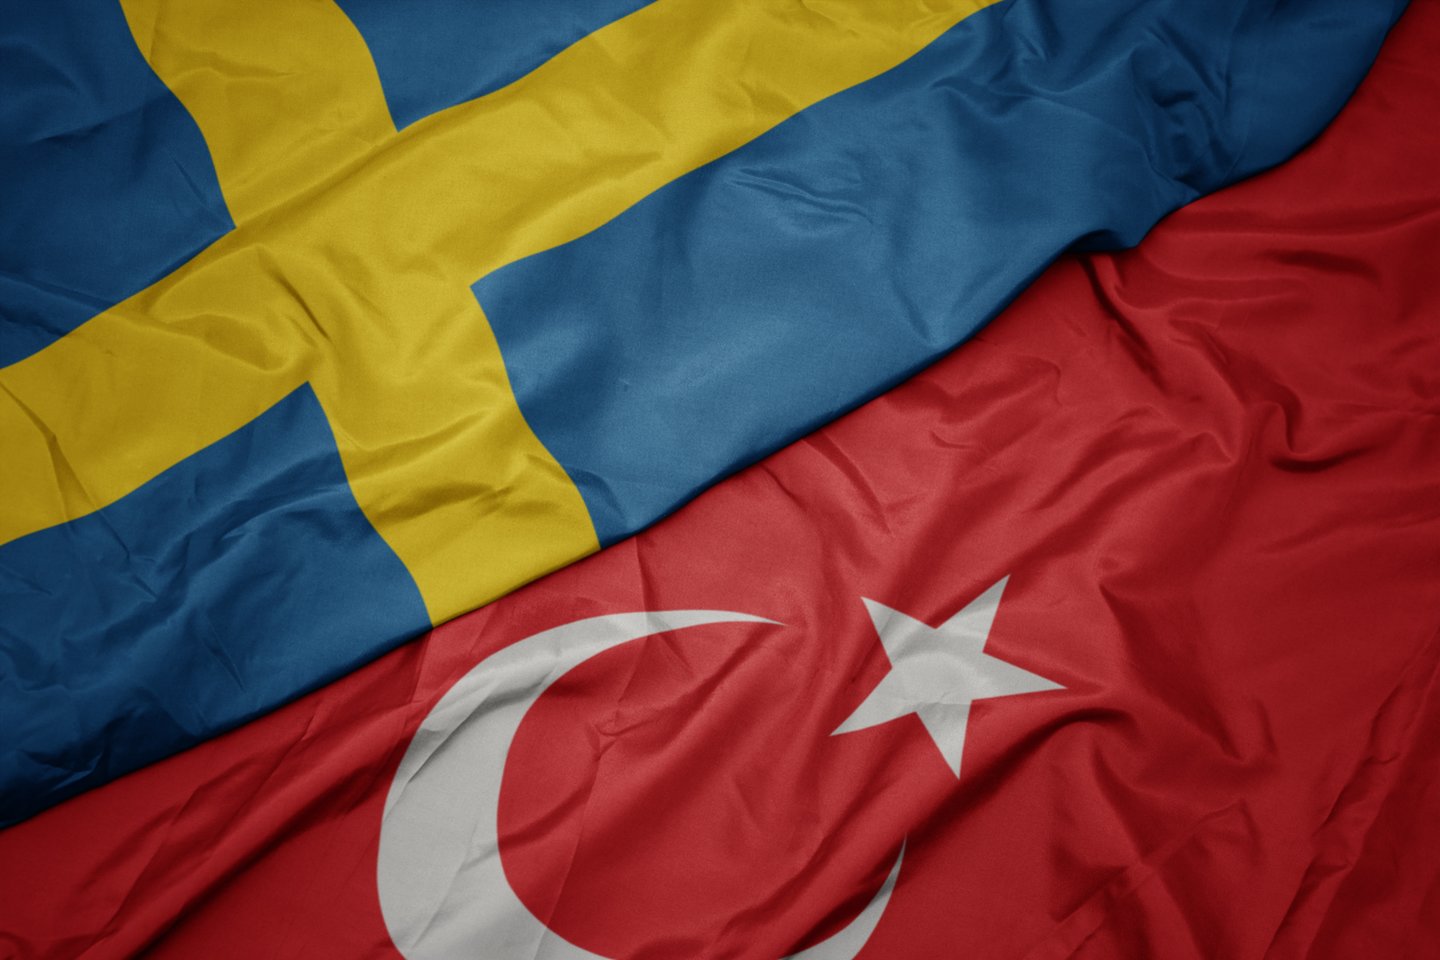  Švedijos ir Turkijos vėliavos.<br>123rf.com asociatyvi nuotr.